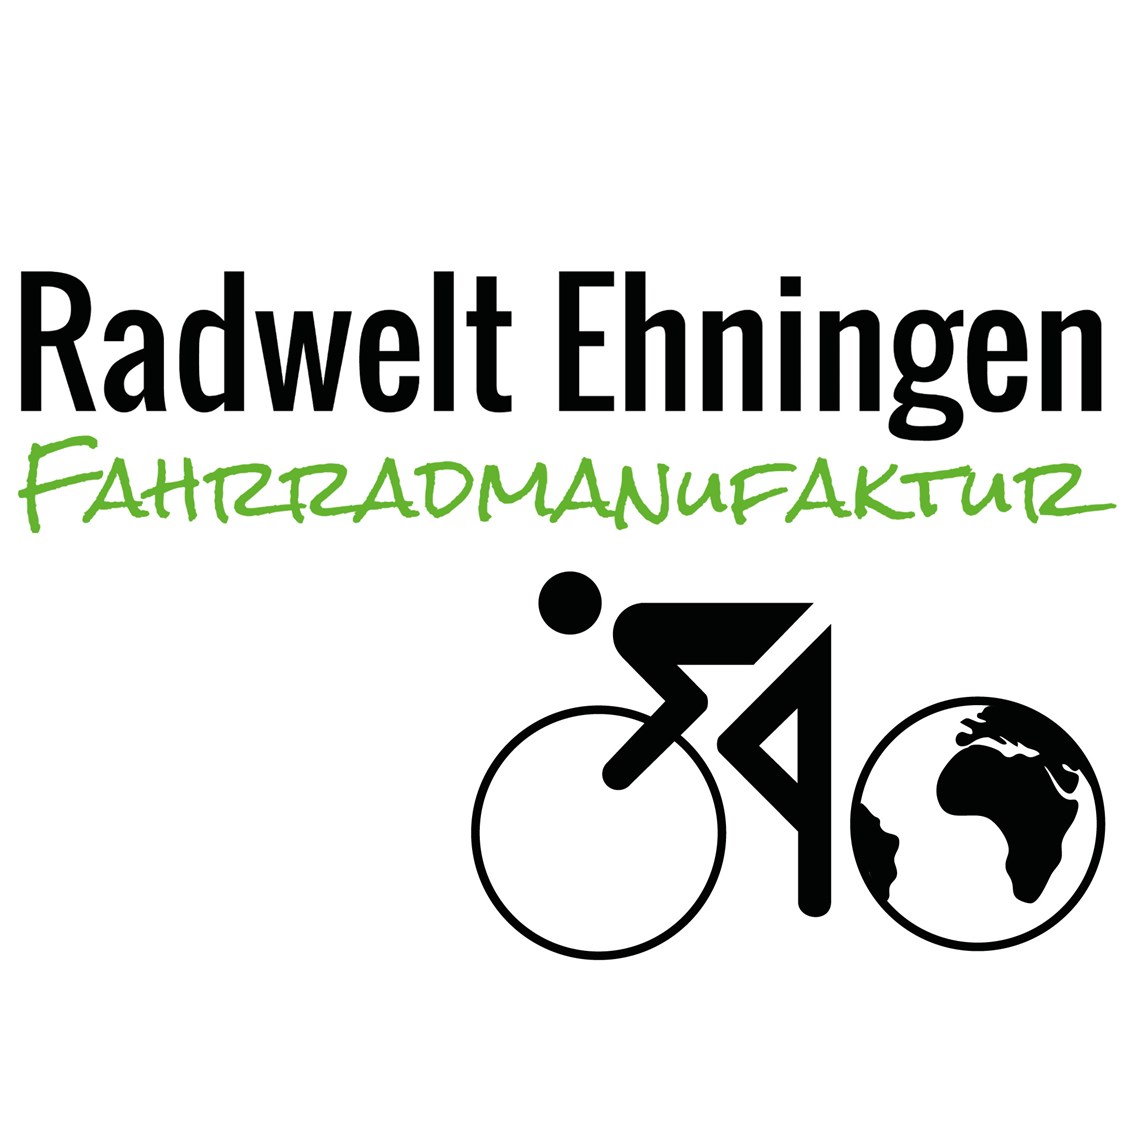 Fahrradwerkstatt: Radwelt Ehningen